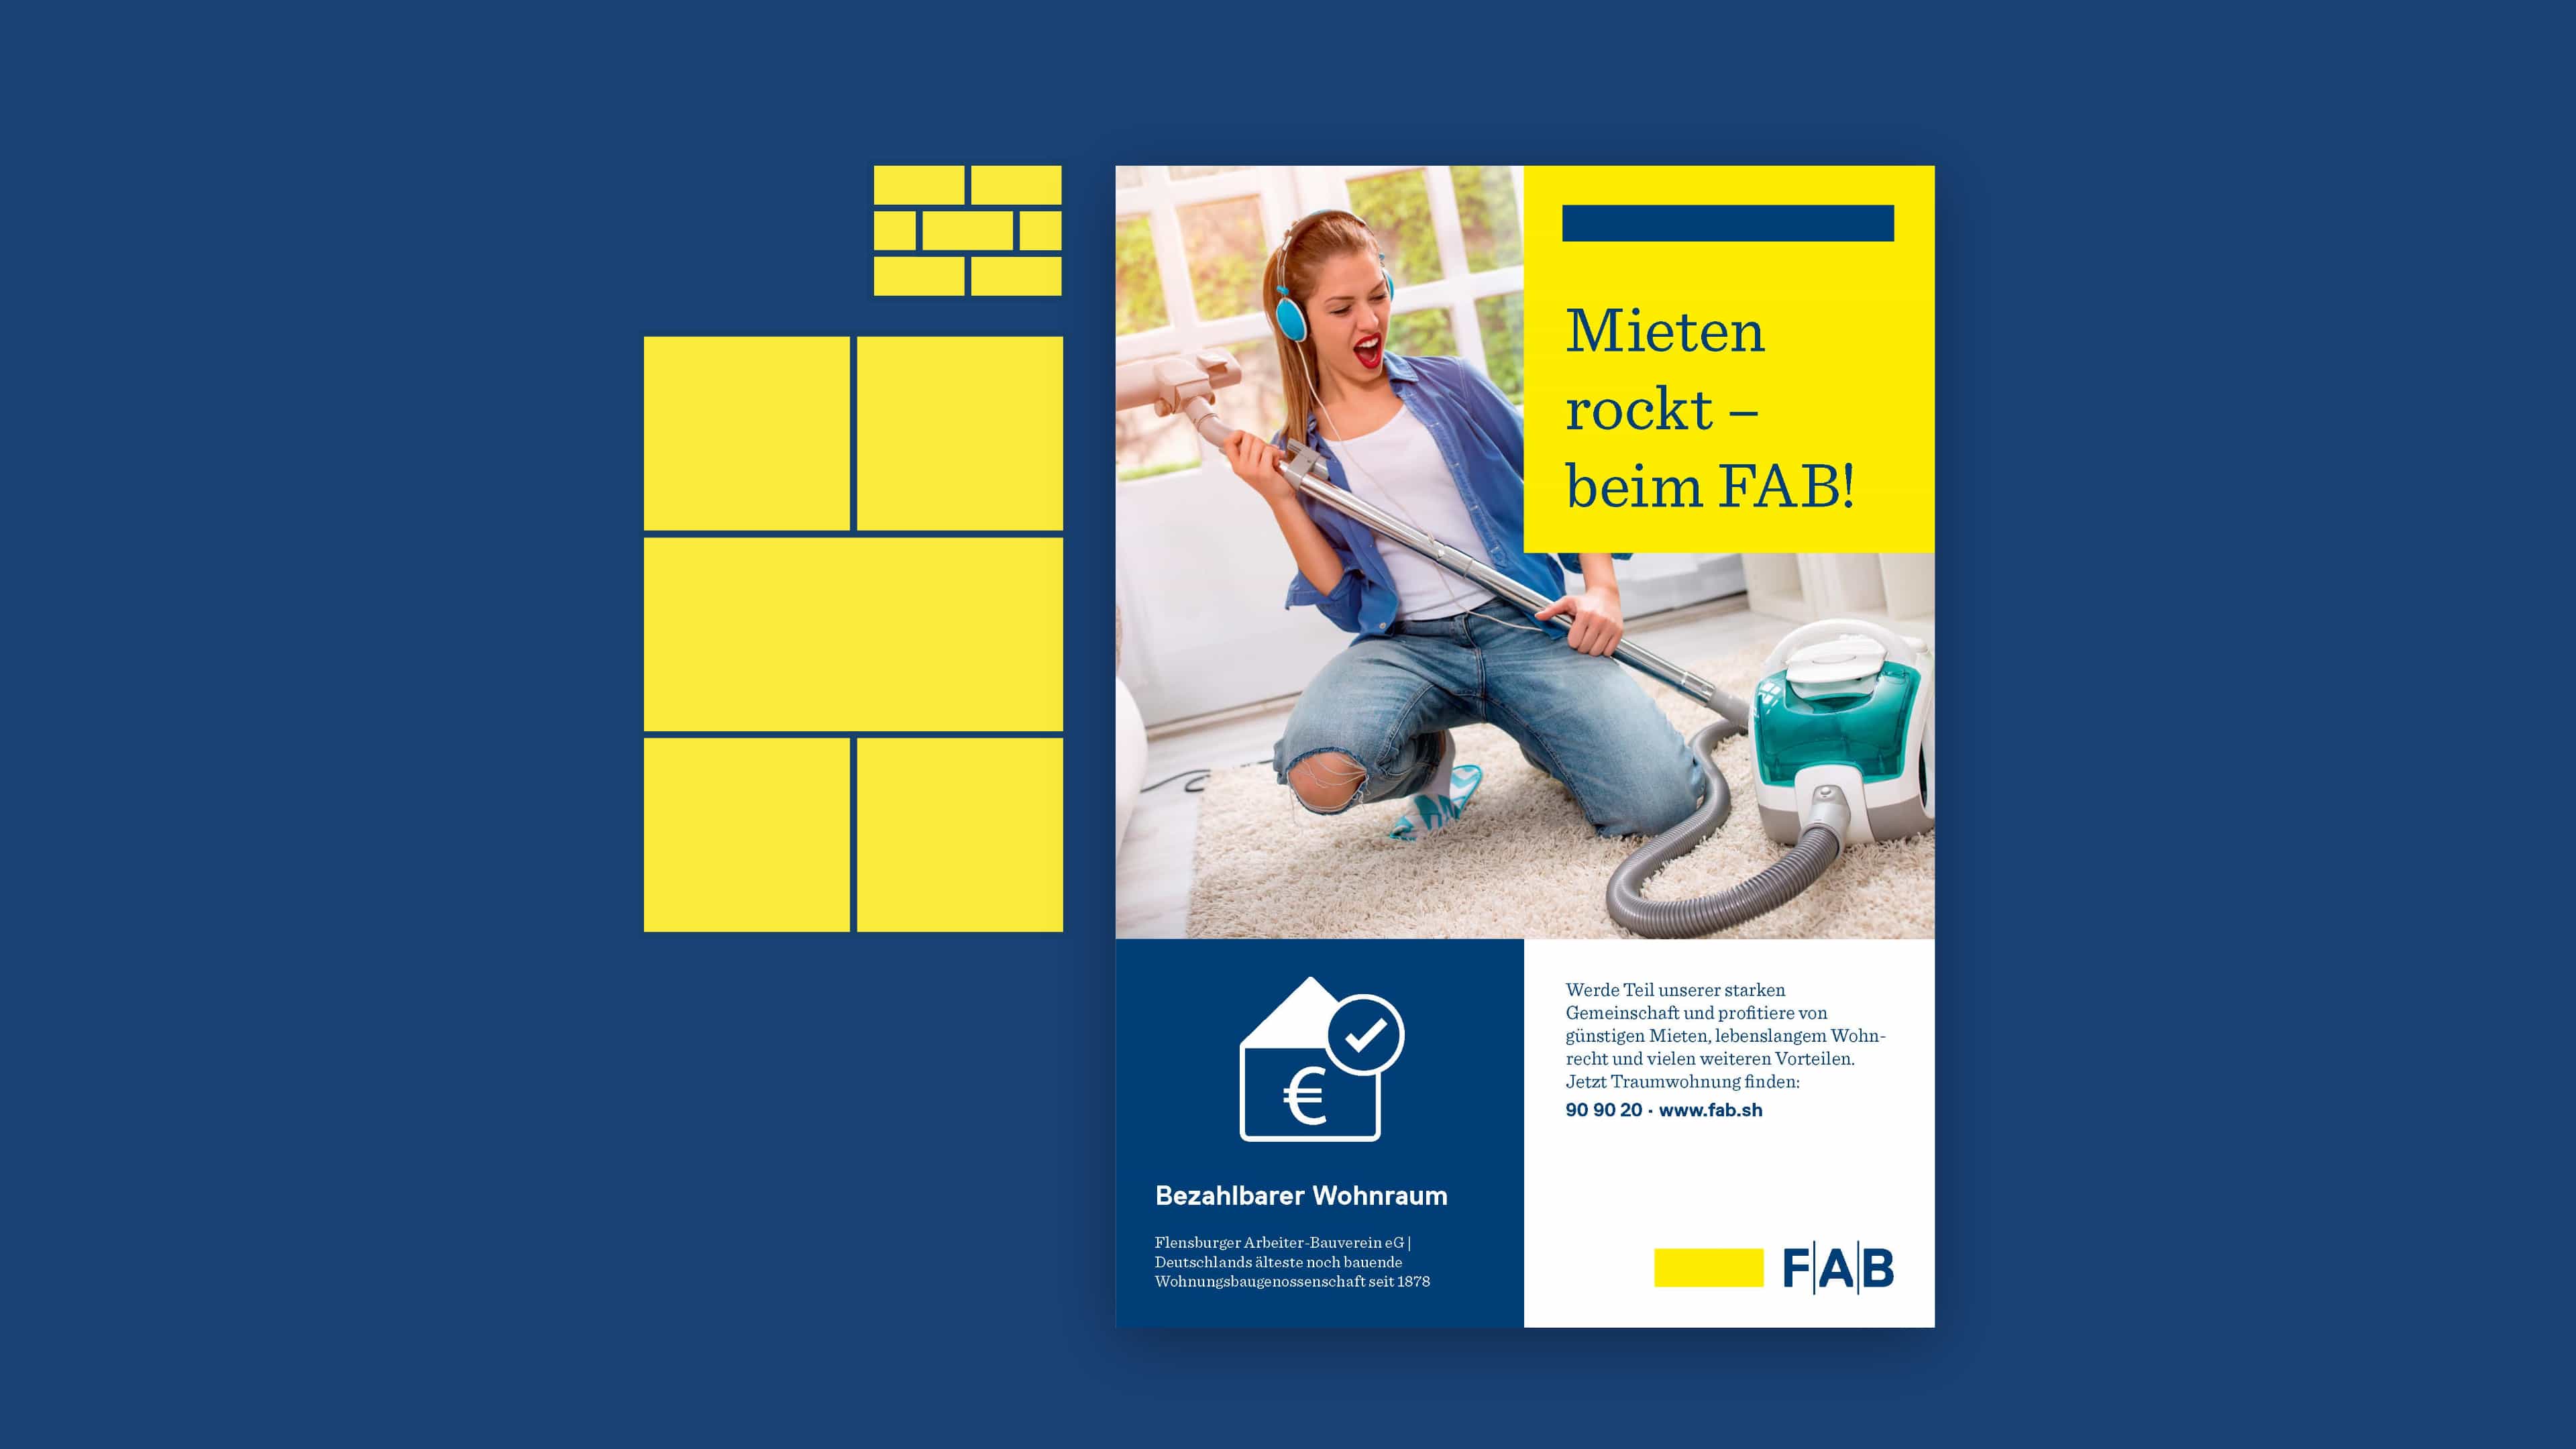 Blau-gelbe Anzeige für FAB zeigt Frau, die Luftgitarre mit Staubsauger macht: "Mieten rockt – beim FAB